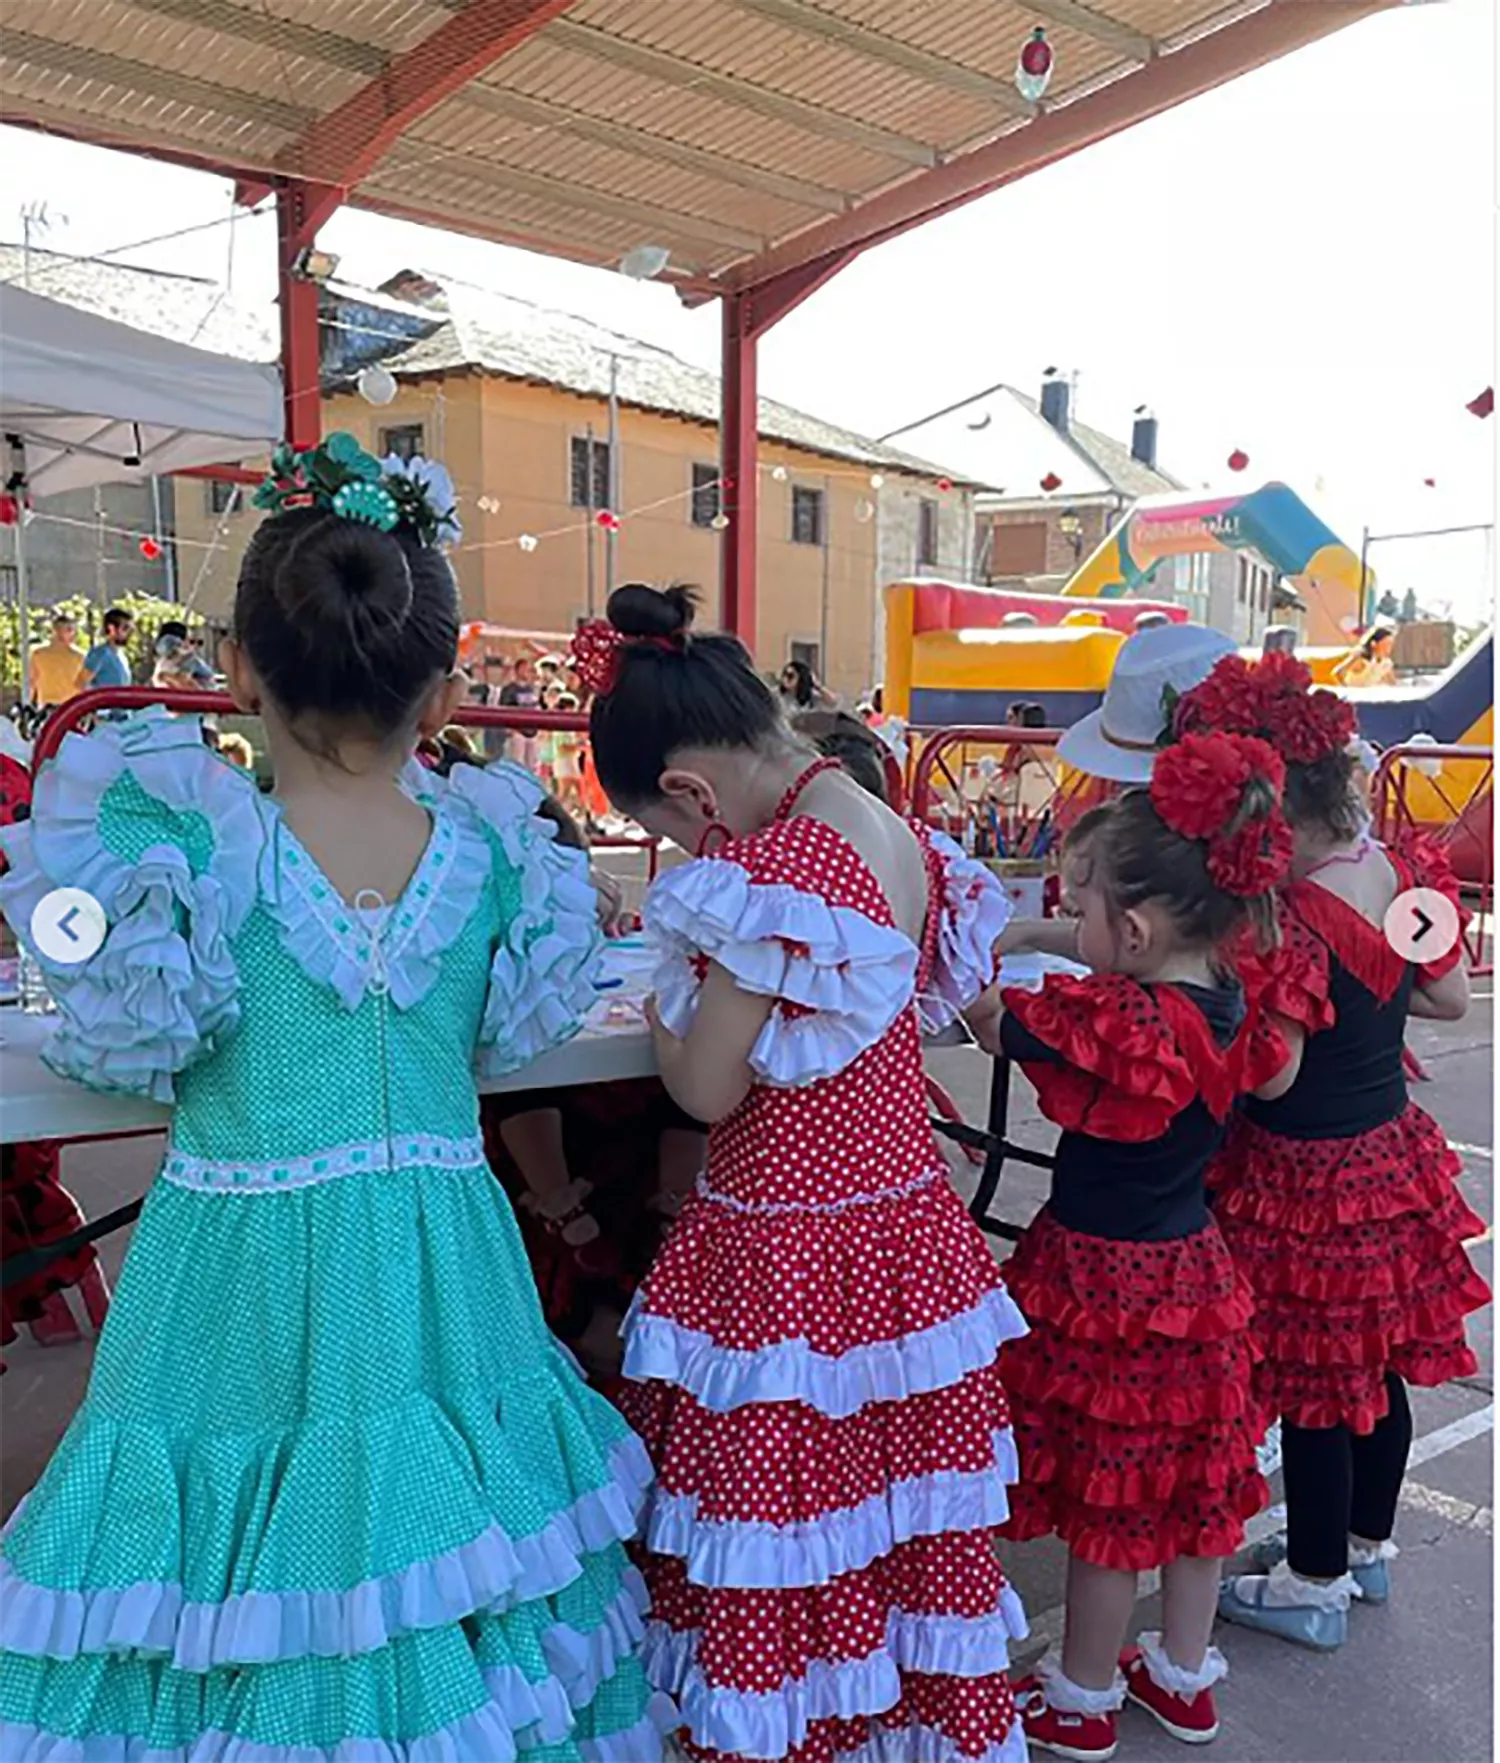 Feria Abril Toral de Merayo | Foto: Instagram Toral de Merato